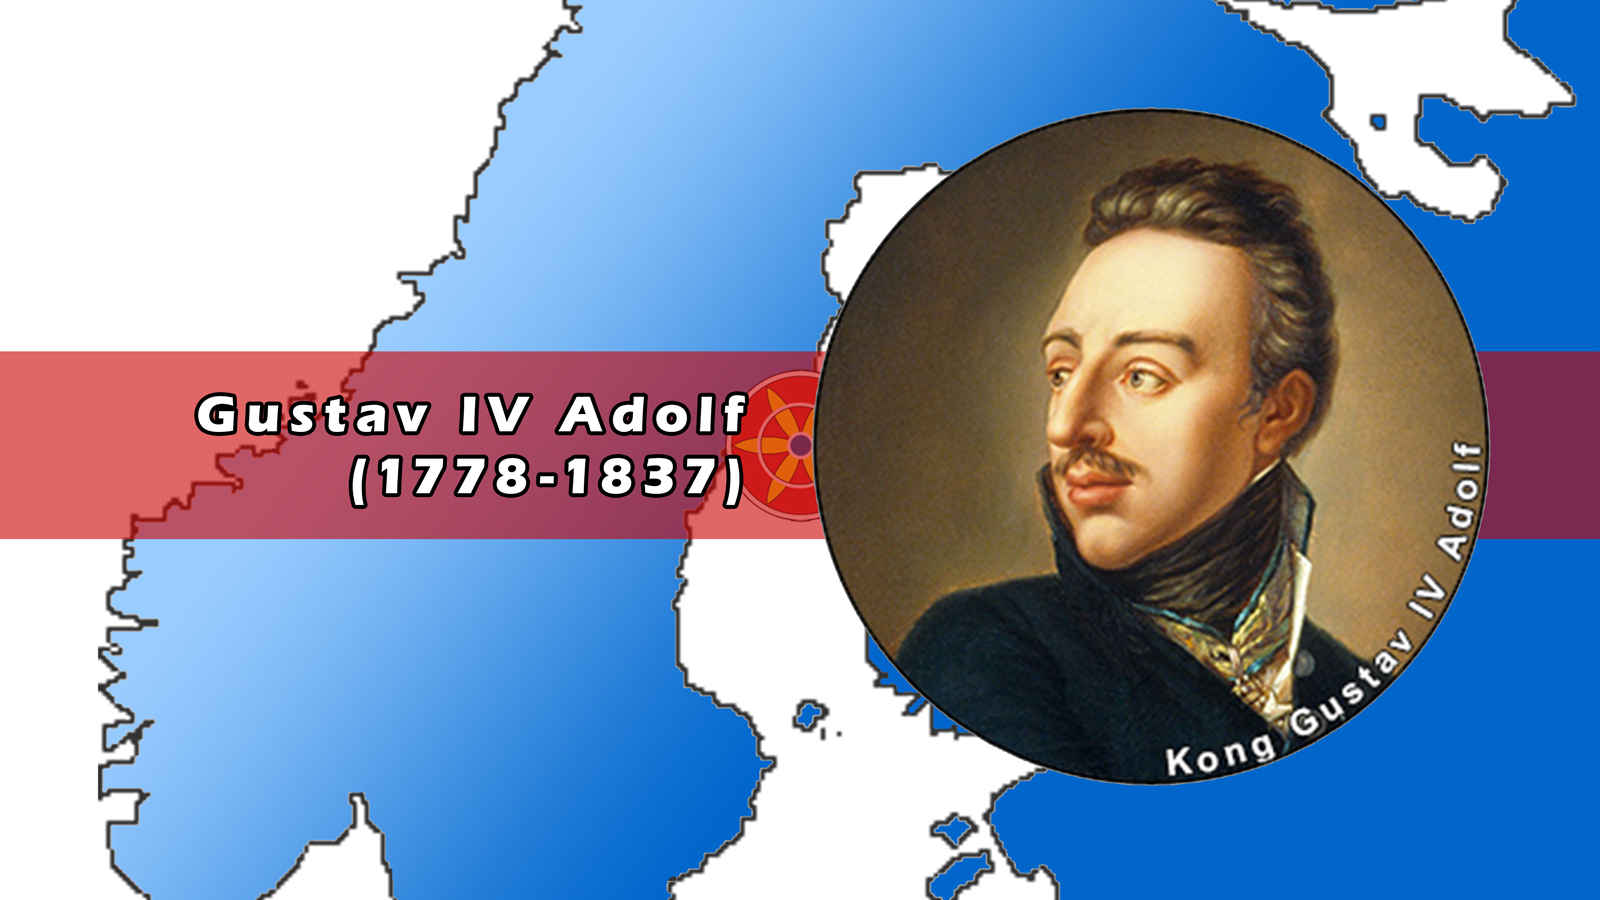 Kong Gustav IV Adolf